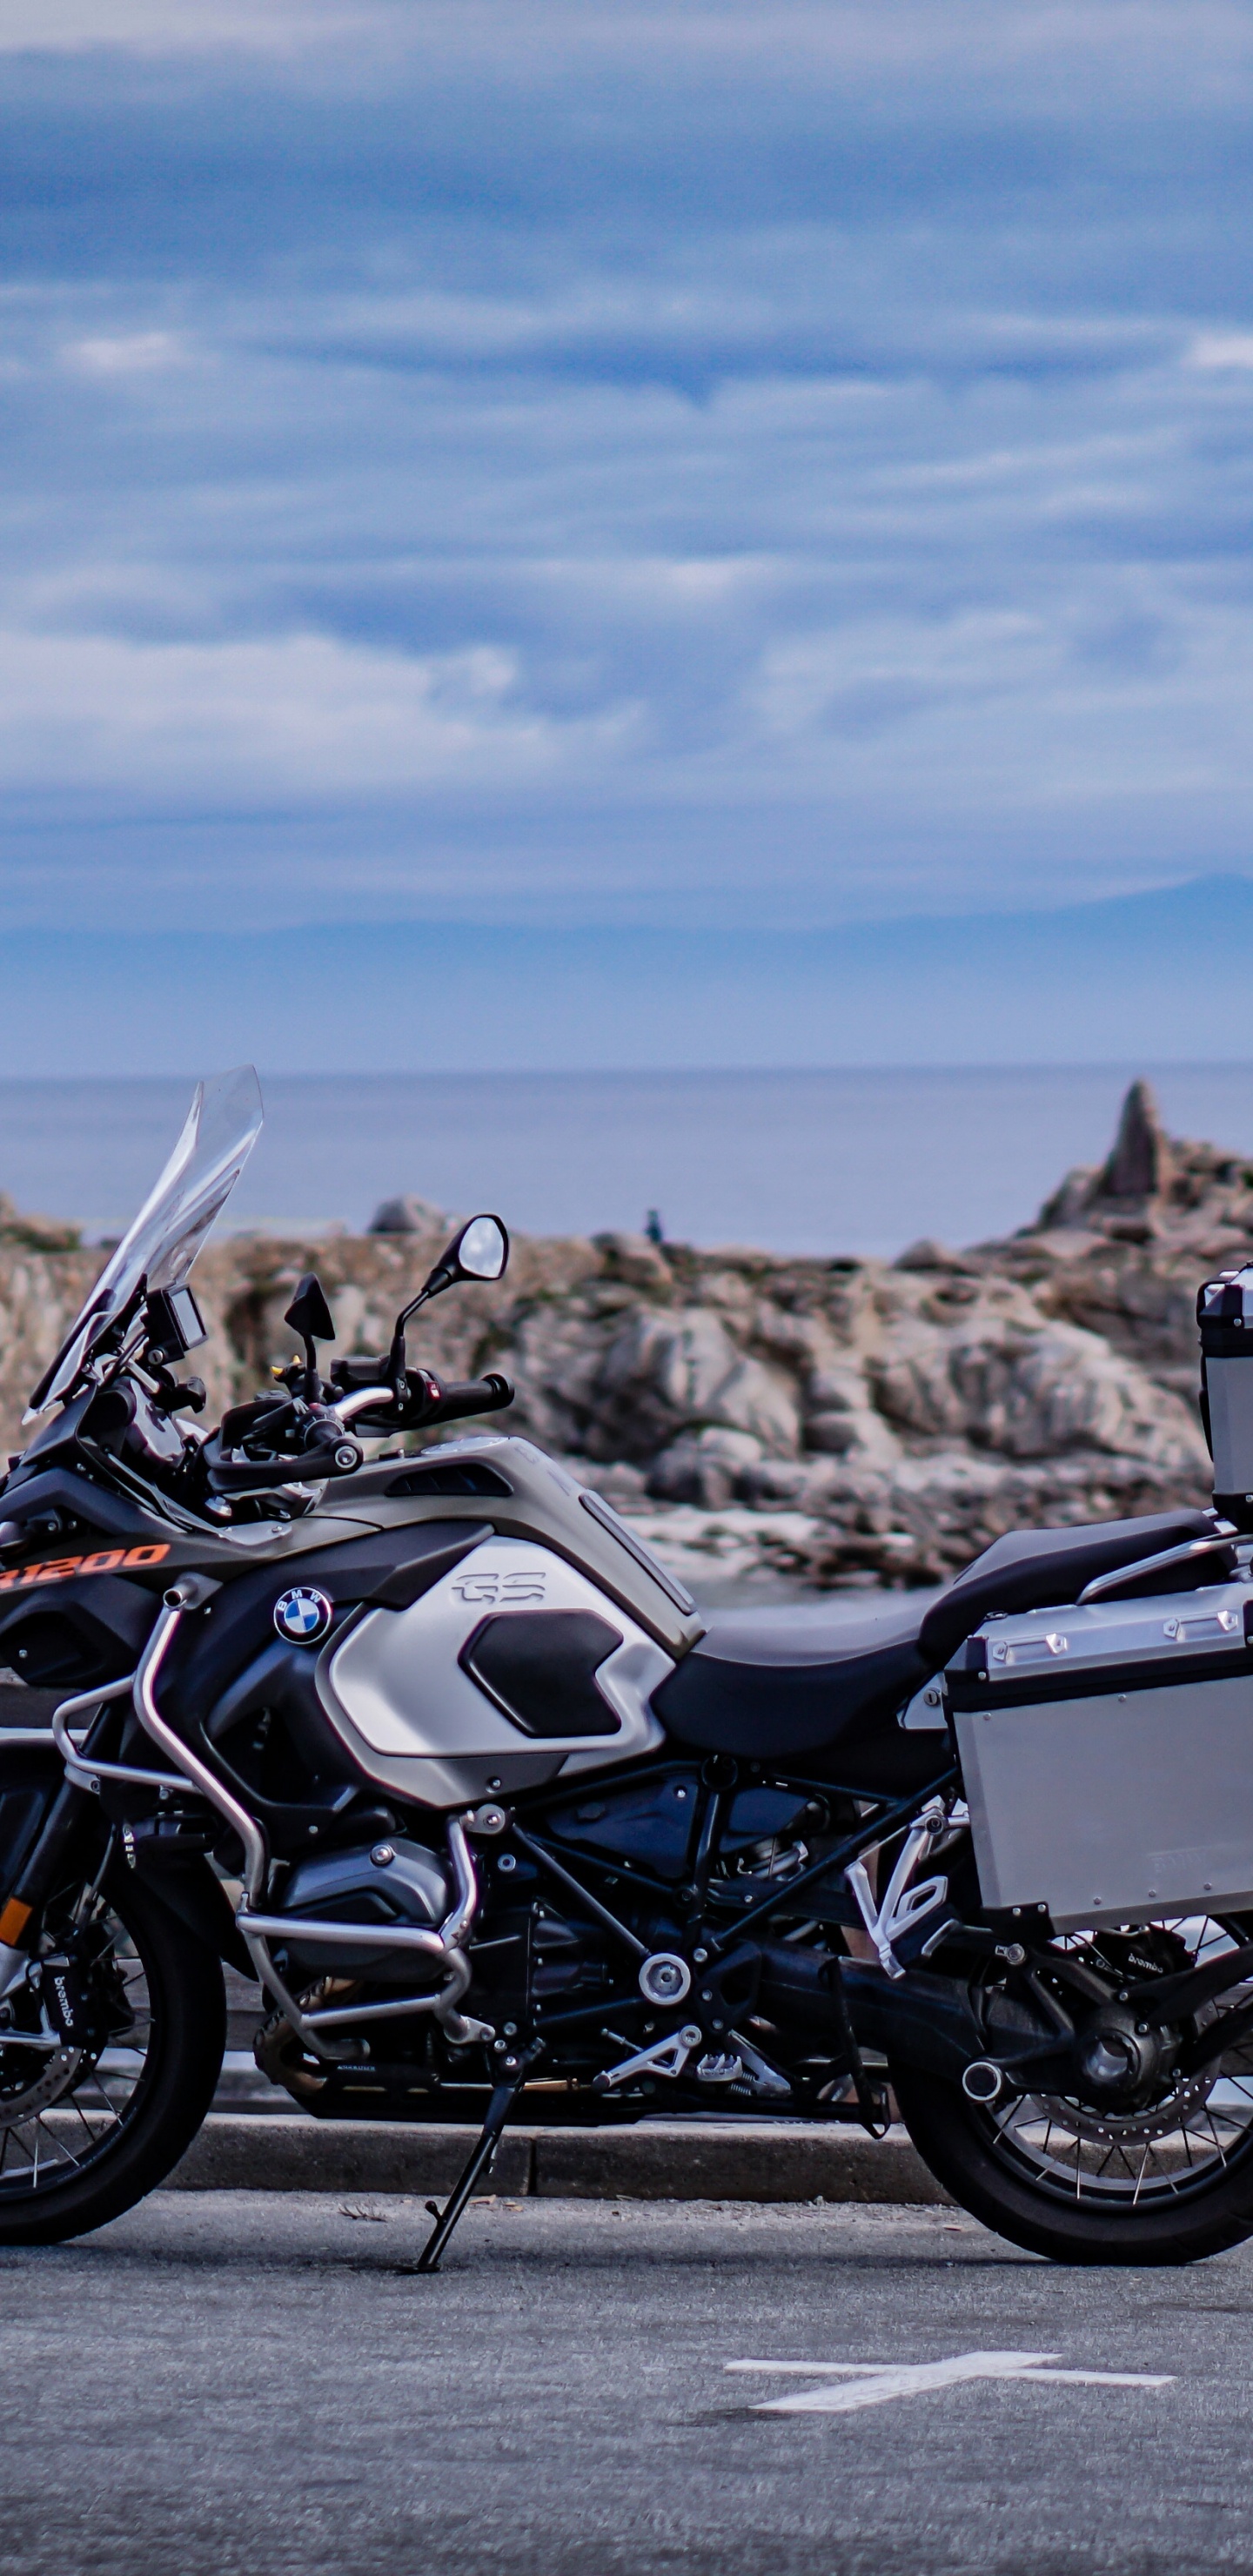 Motocicleta Negra y Plateada Estacionada en un Muelle de Madera Marrón Durante el Día. Wallpaper in 1440x2960 Resolution